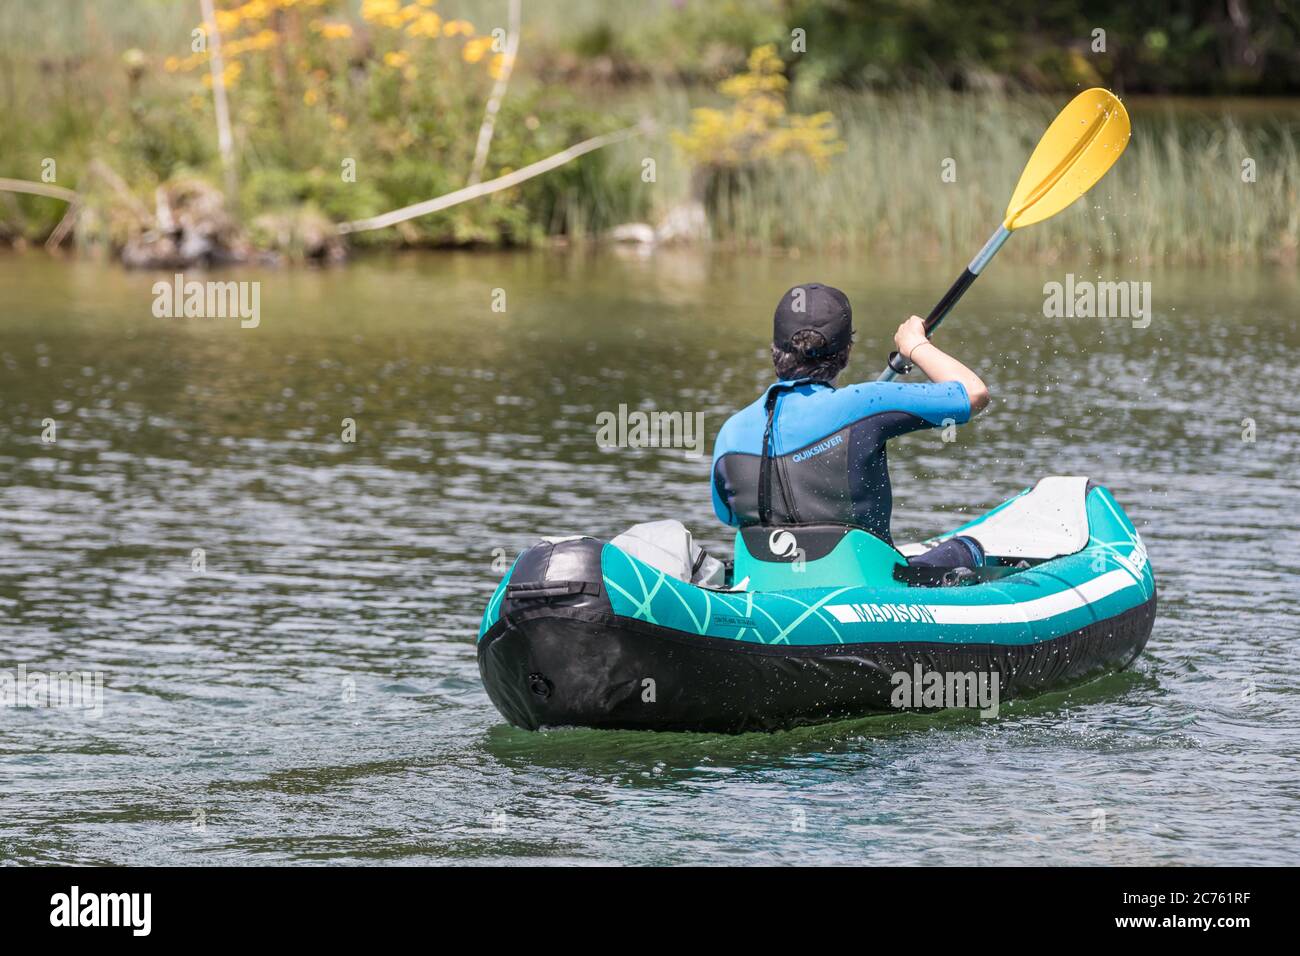 man in neoprene kayaking on a lake Stock Photo